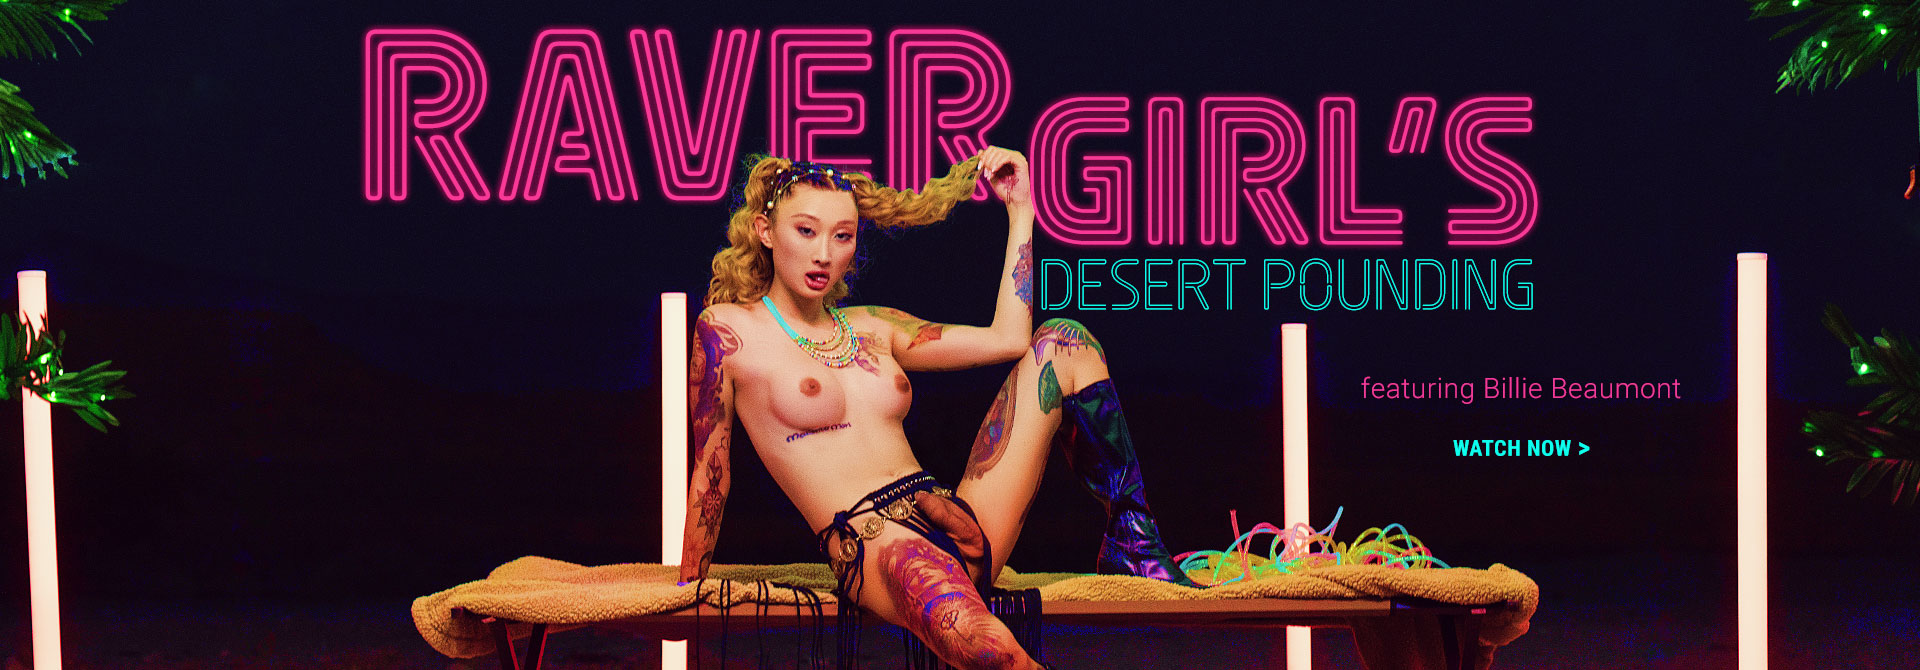 Watch Raver Girl's Desert Pounding only on TransAngels